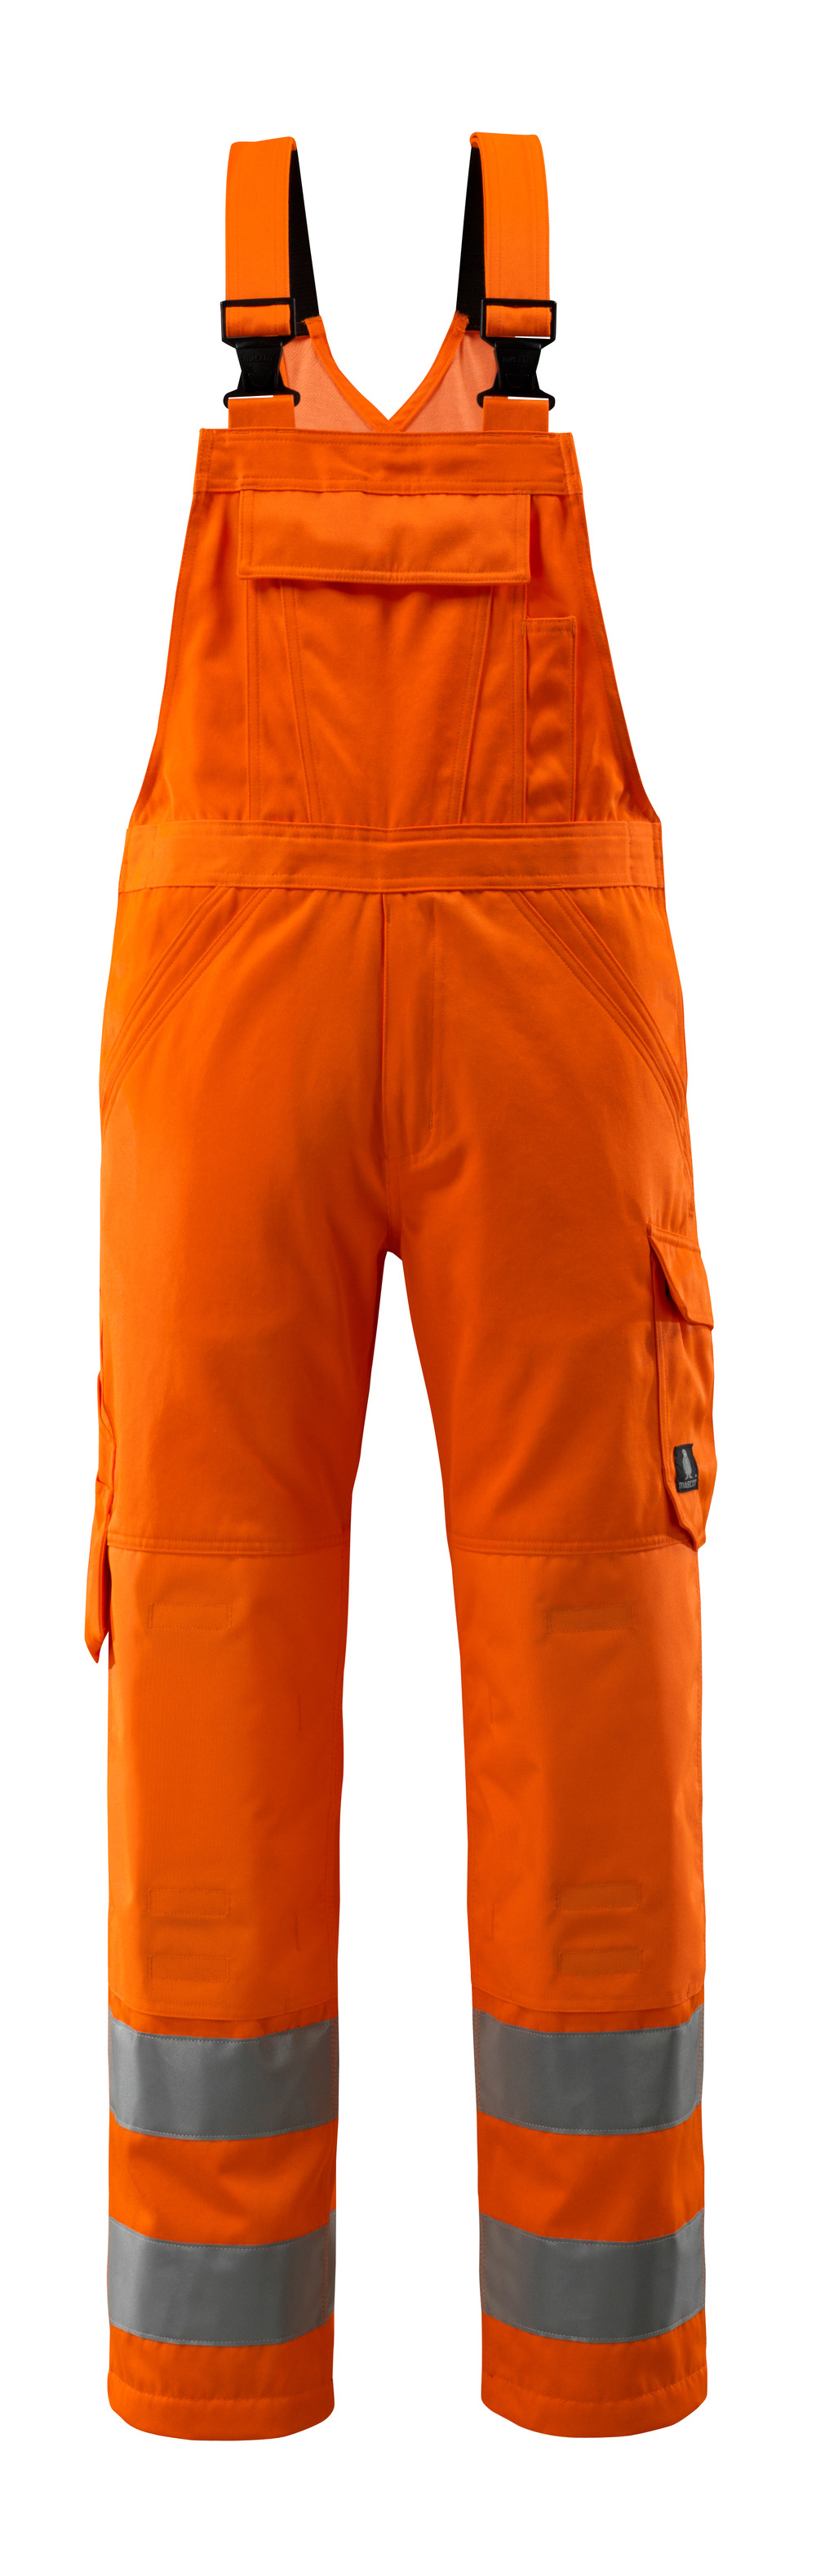 MASCOT-Warnschutz, Warn-Latzhose, Devonport,  Lg. 90 cm, 290 g/m², orange

